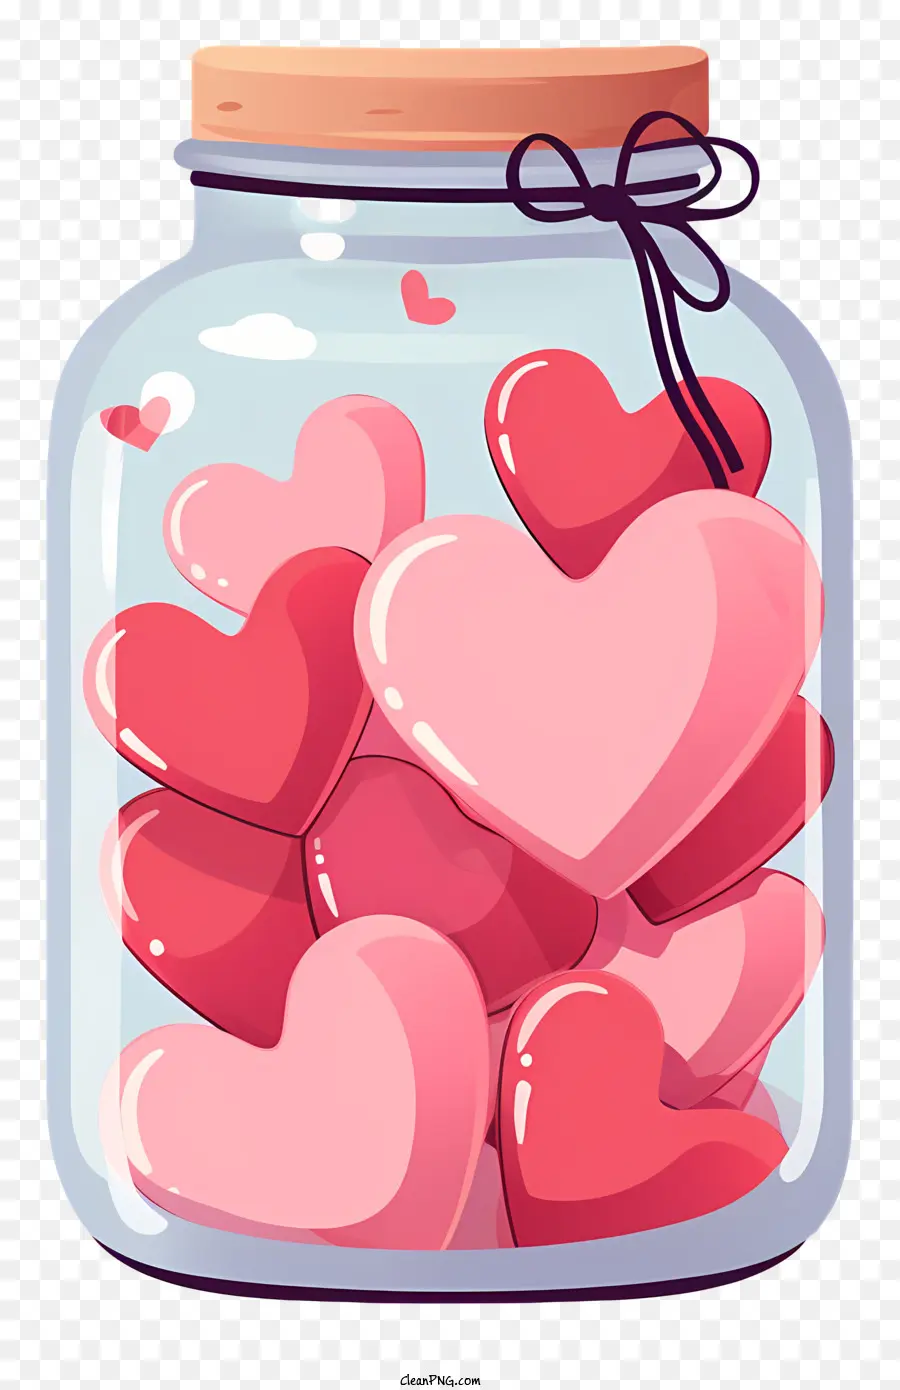 Masonglas mit Herz transparentes Glasglas rosa herzförmige Süßigkeiten schwarze Hintergrund biegsamer Griff - Transparentes Glas mit rosa herzförmigen Süßigkeiten gefüllt